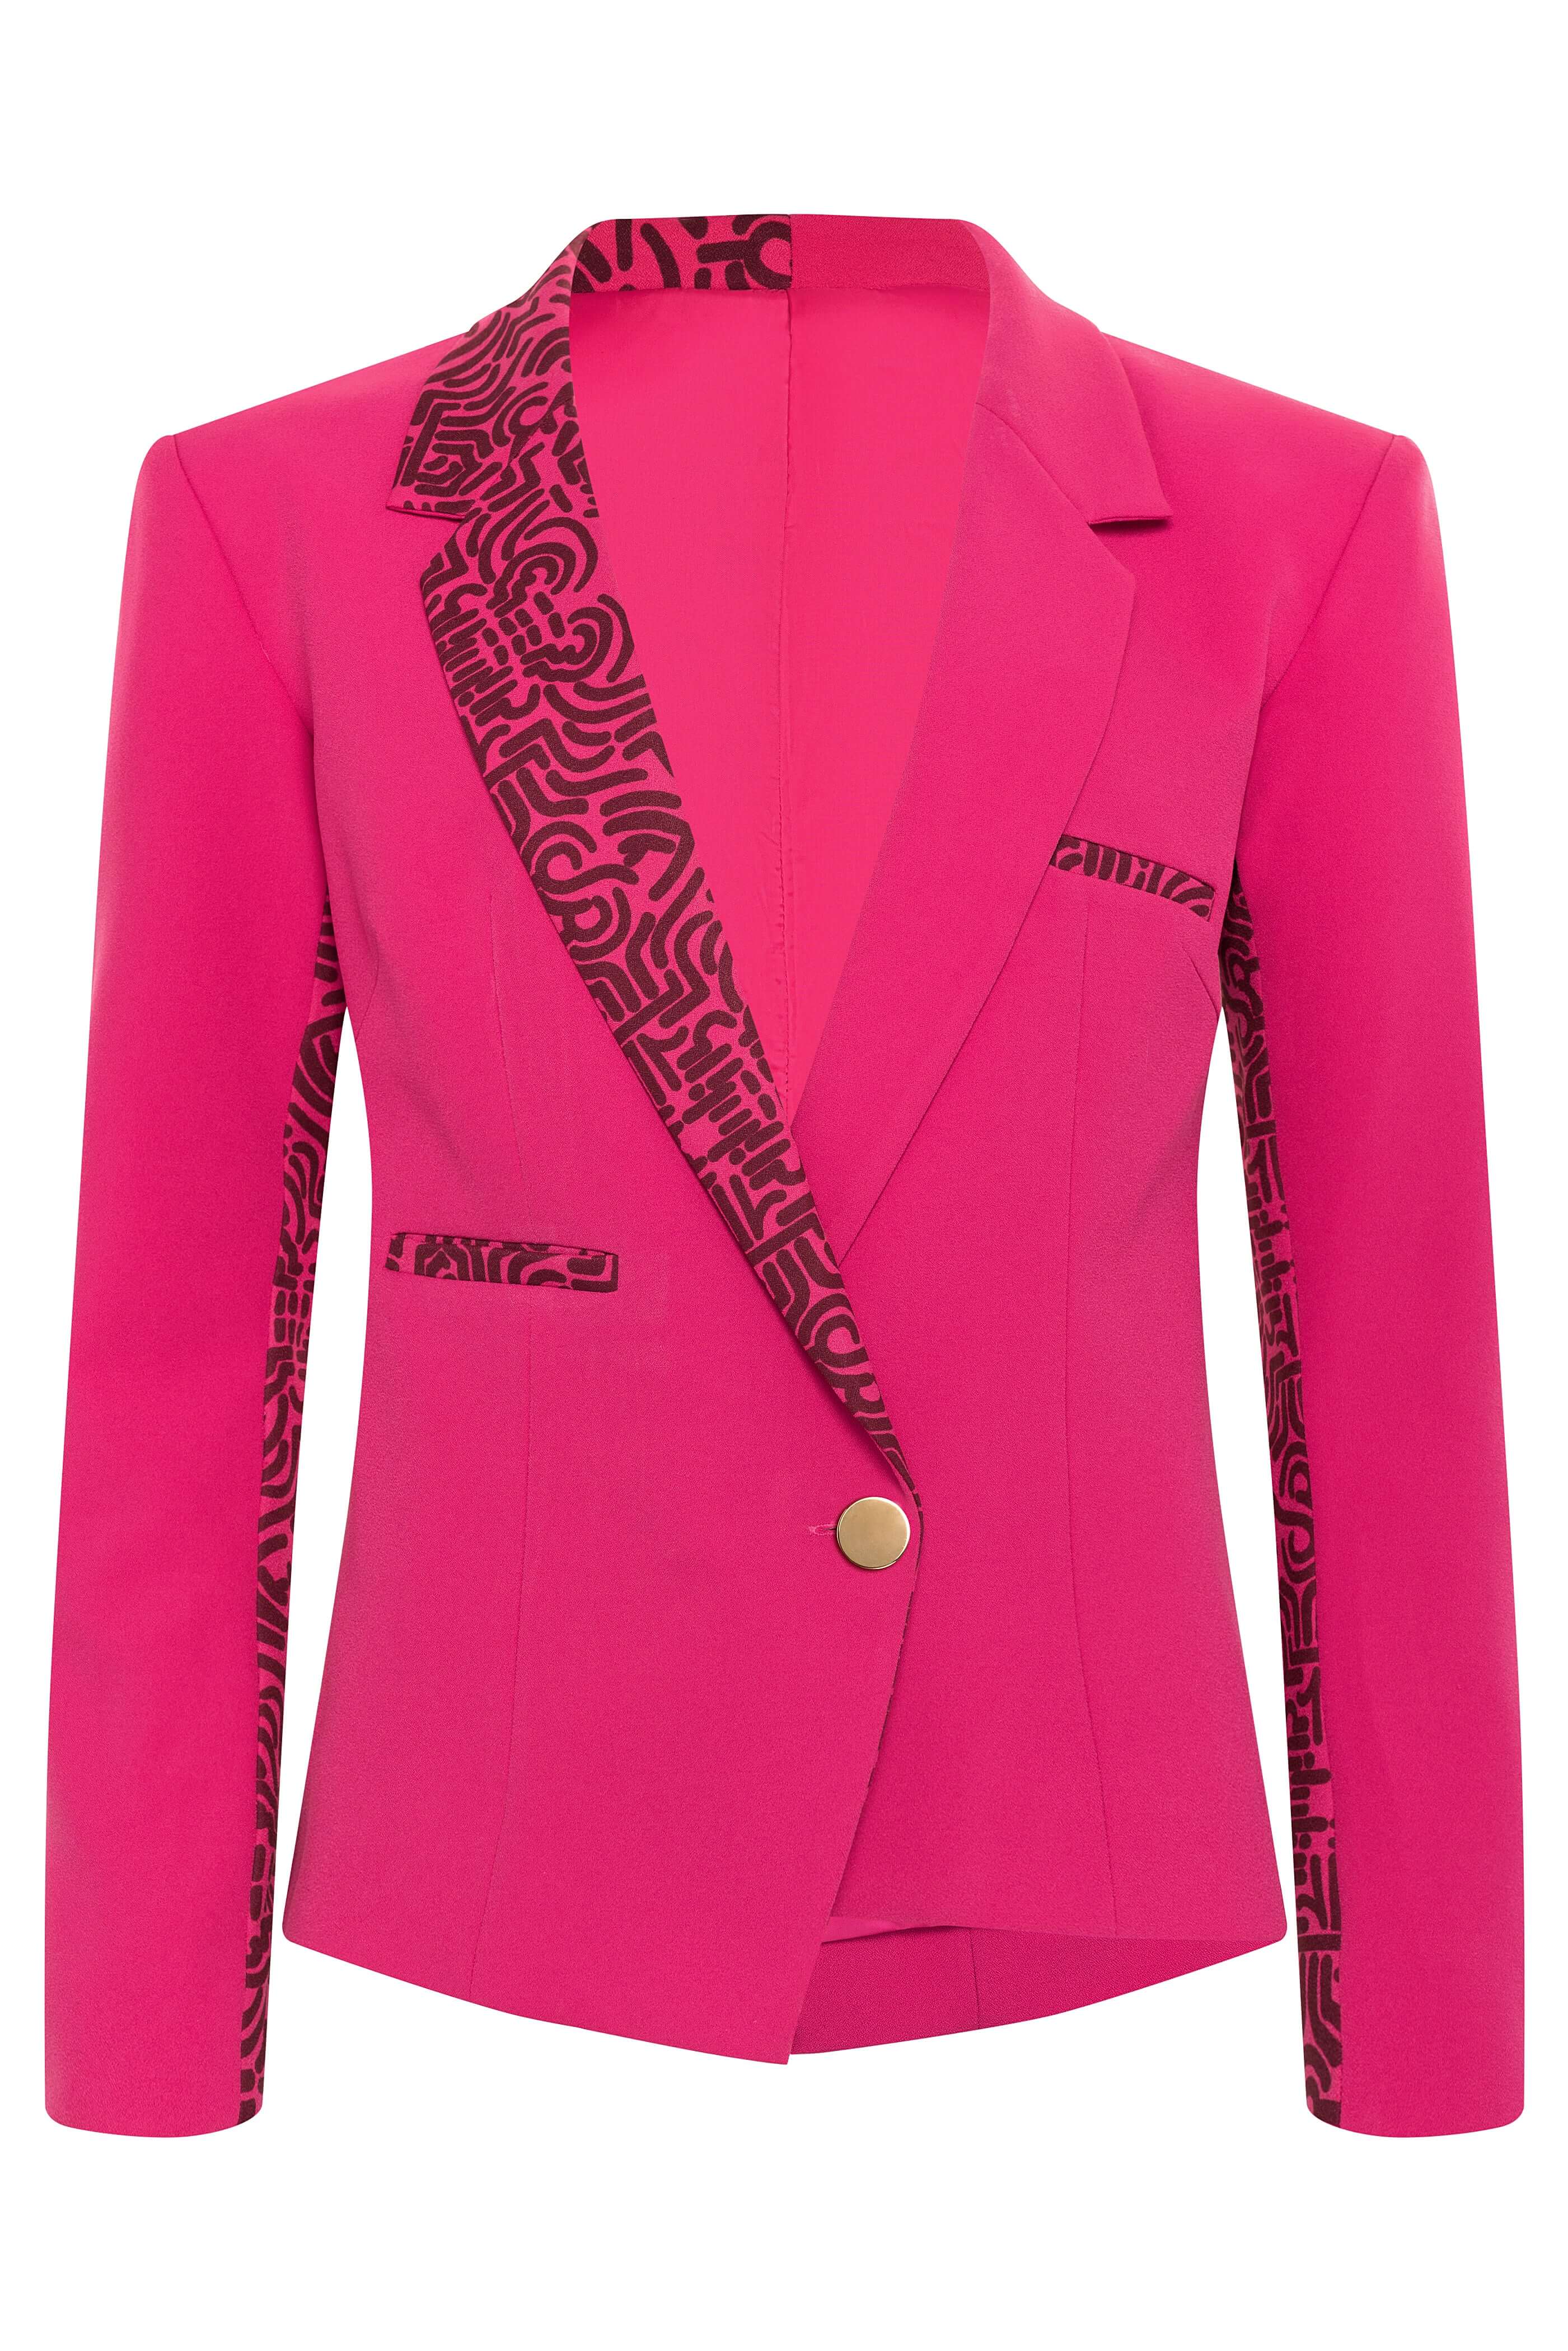 Yeli Bana Women's Double Breasted Blazer (Hot Pink)